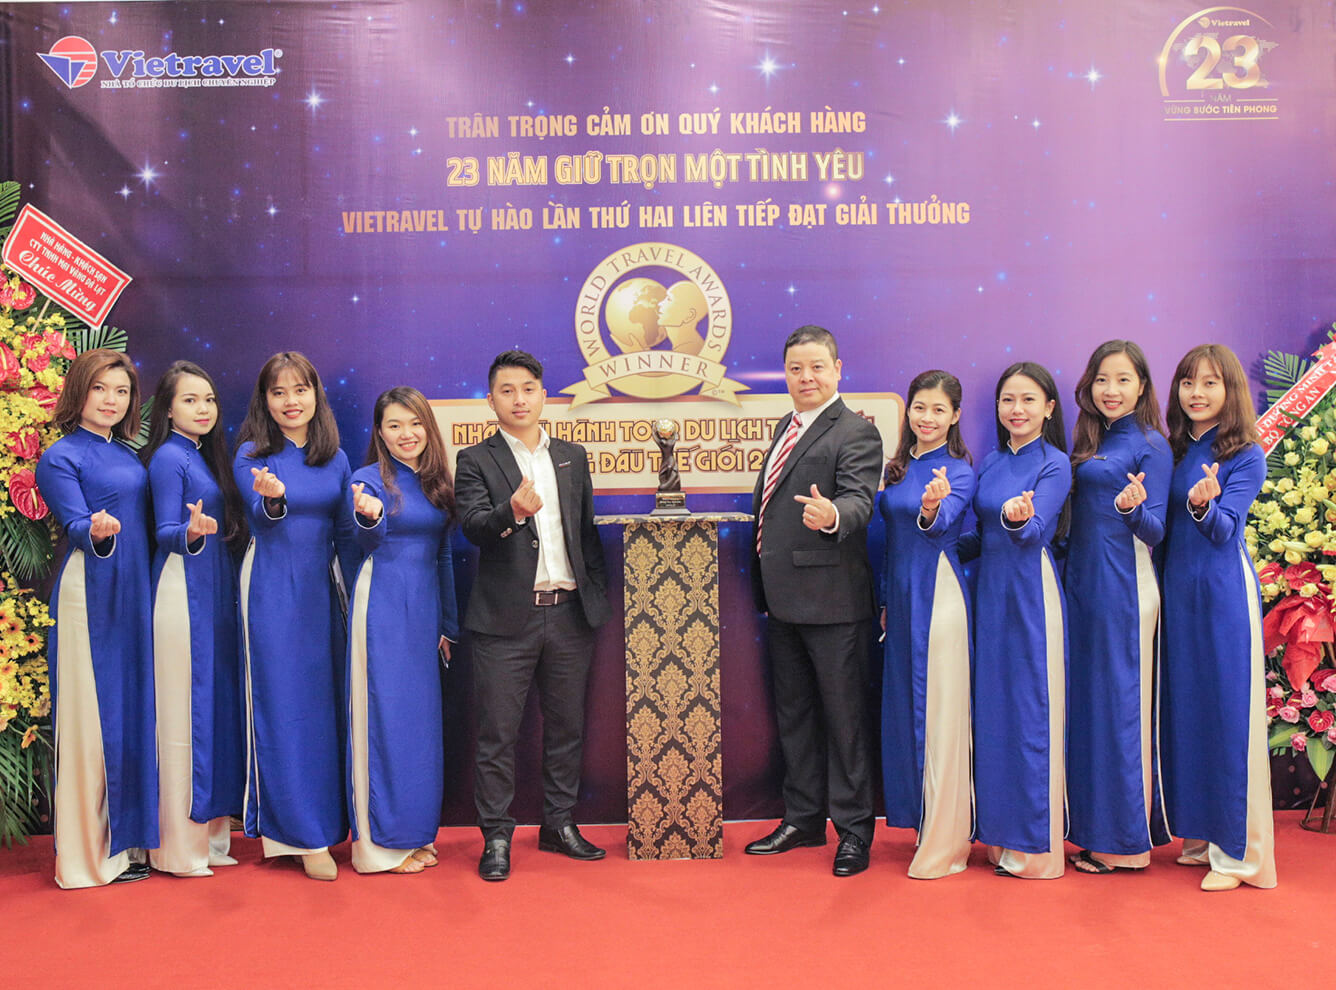 Hành trình xuyên Việt rước cúp 'World Travel Awards' lần II và trưng bày tại Vietravel Đà Lạt